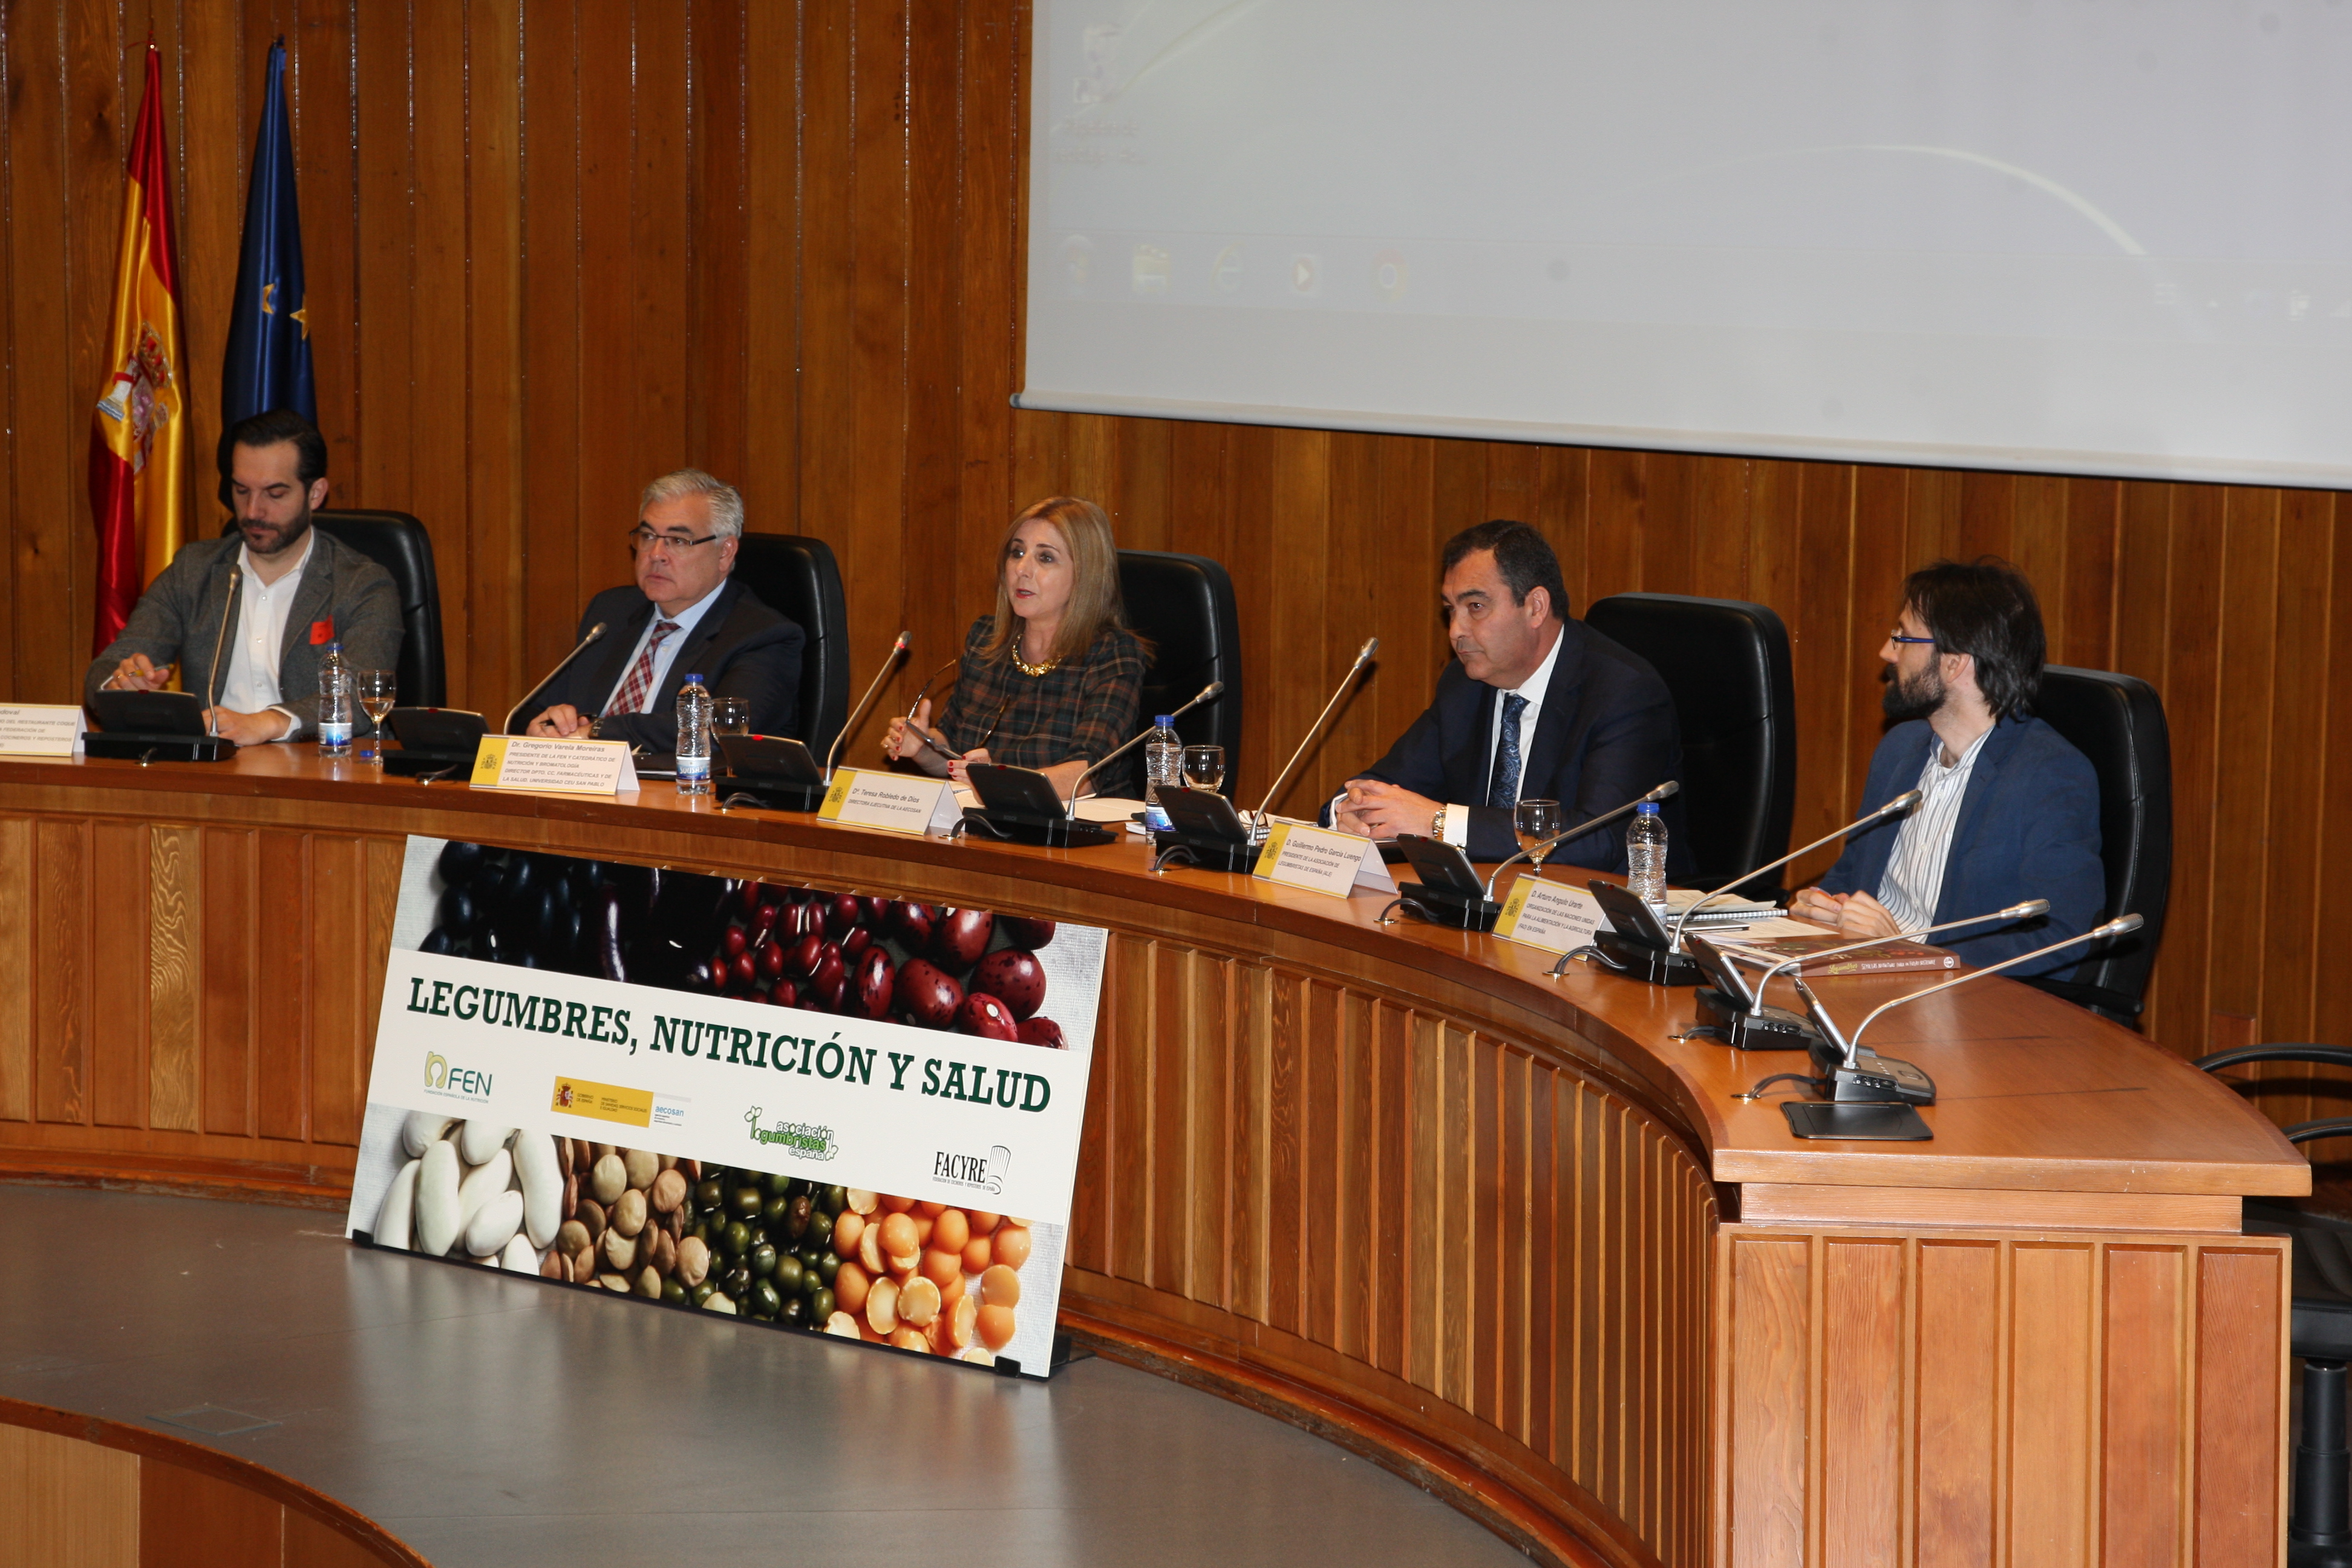 Presentación del “Informe sobre Legumbres, Nutrición y Salud” elaborado por la Fundación Española de la Nutrición (FEN)